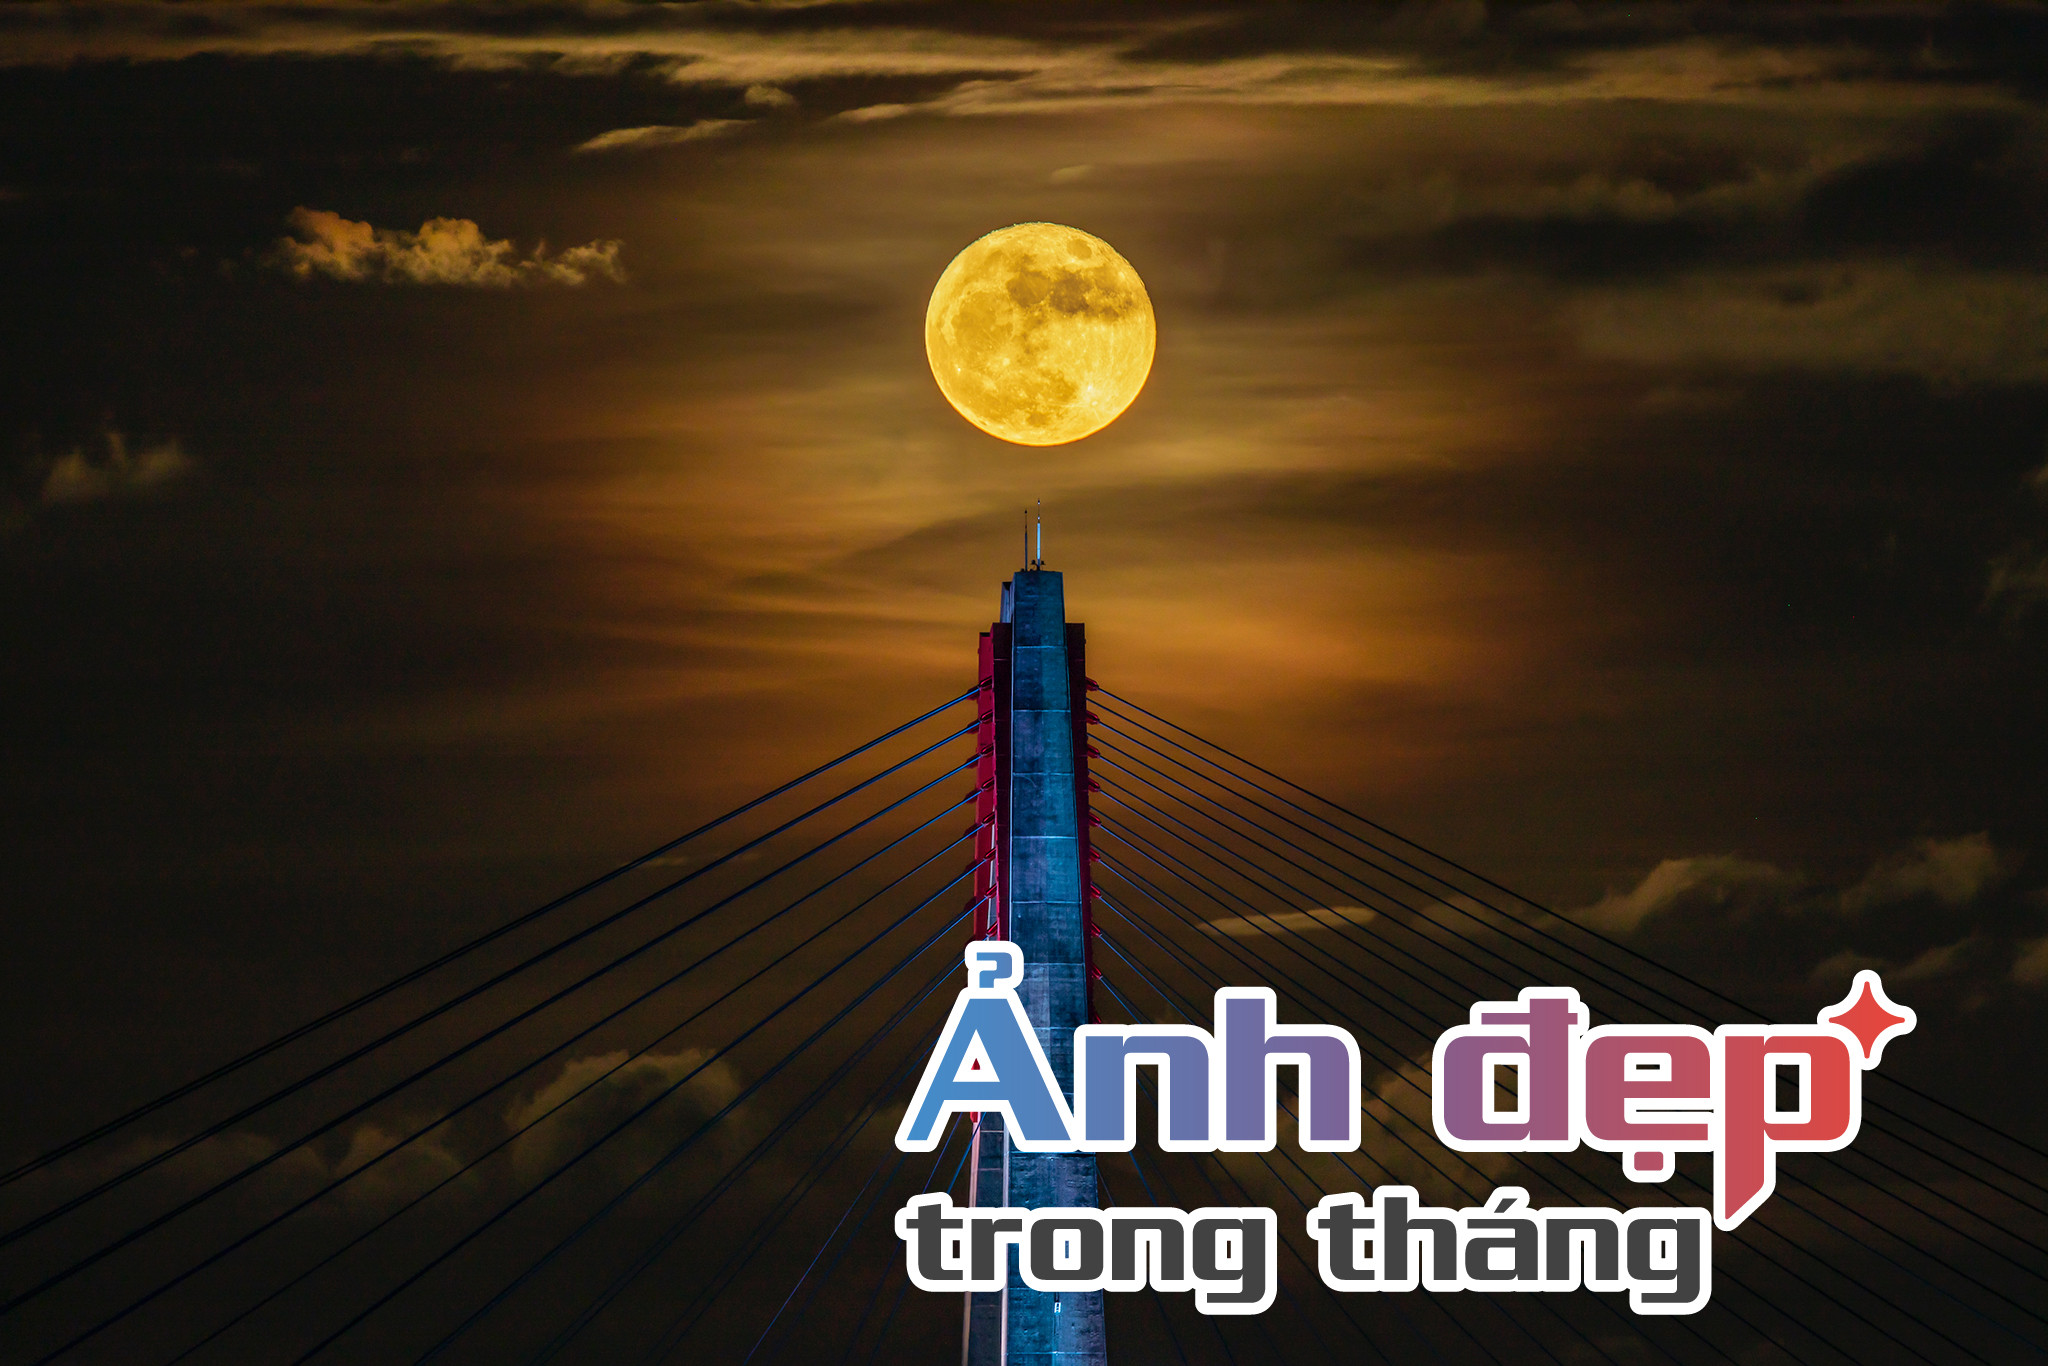 Siêu trăng trên cầu Nhật Tân là ảnh ấn tượng tháng 7 trên VietNamNet